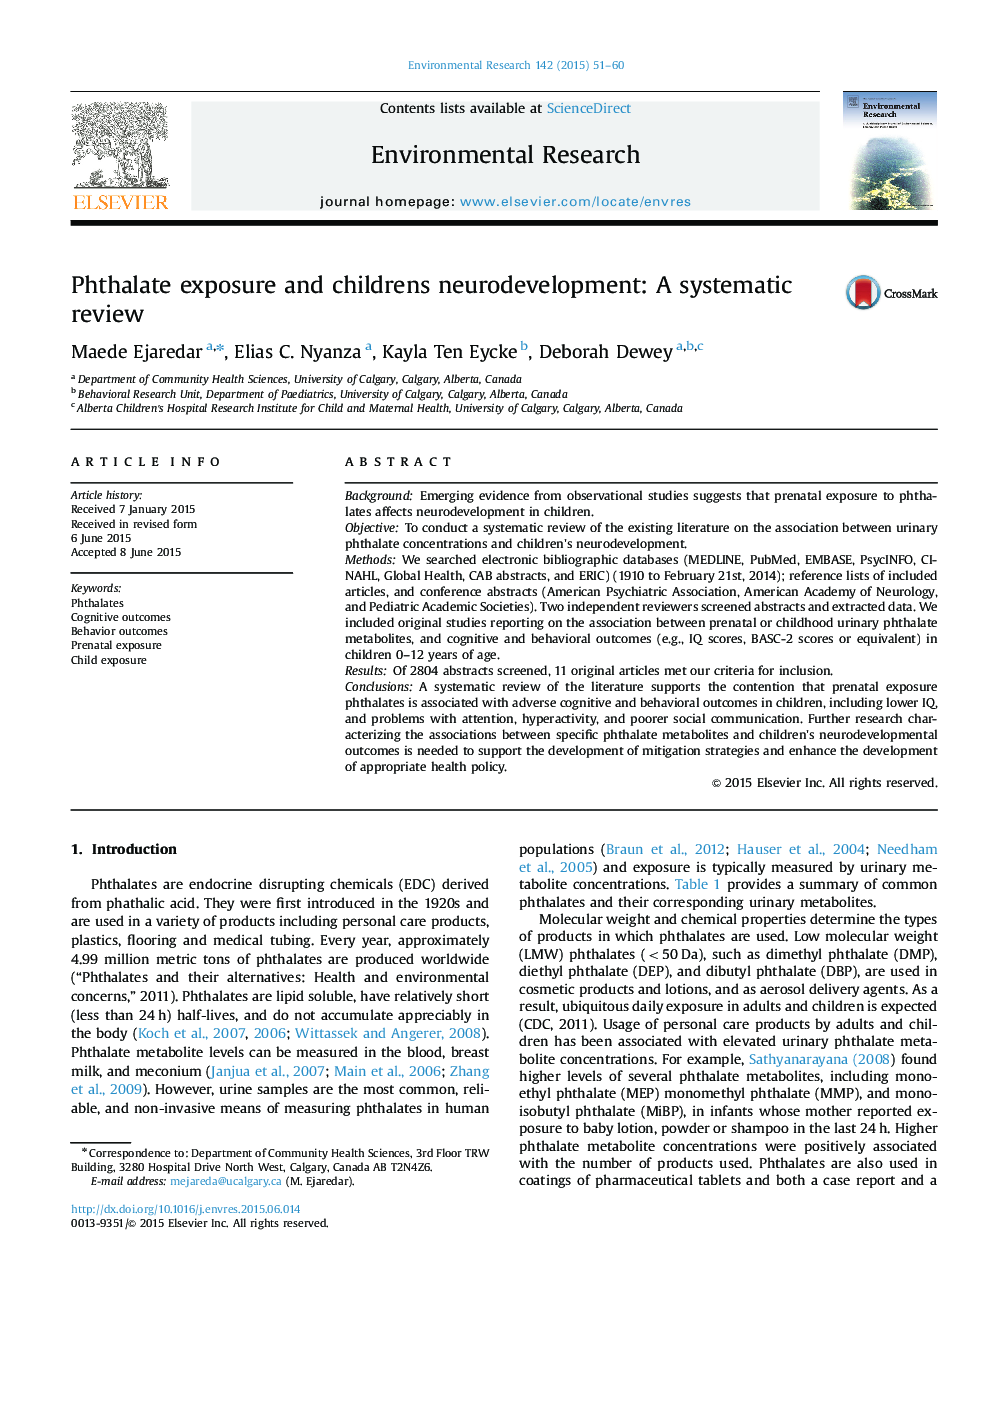 قرار گرفتن در معرض فتالات و رشد عصبی کودکان: بررسی سیستماتیک 